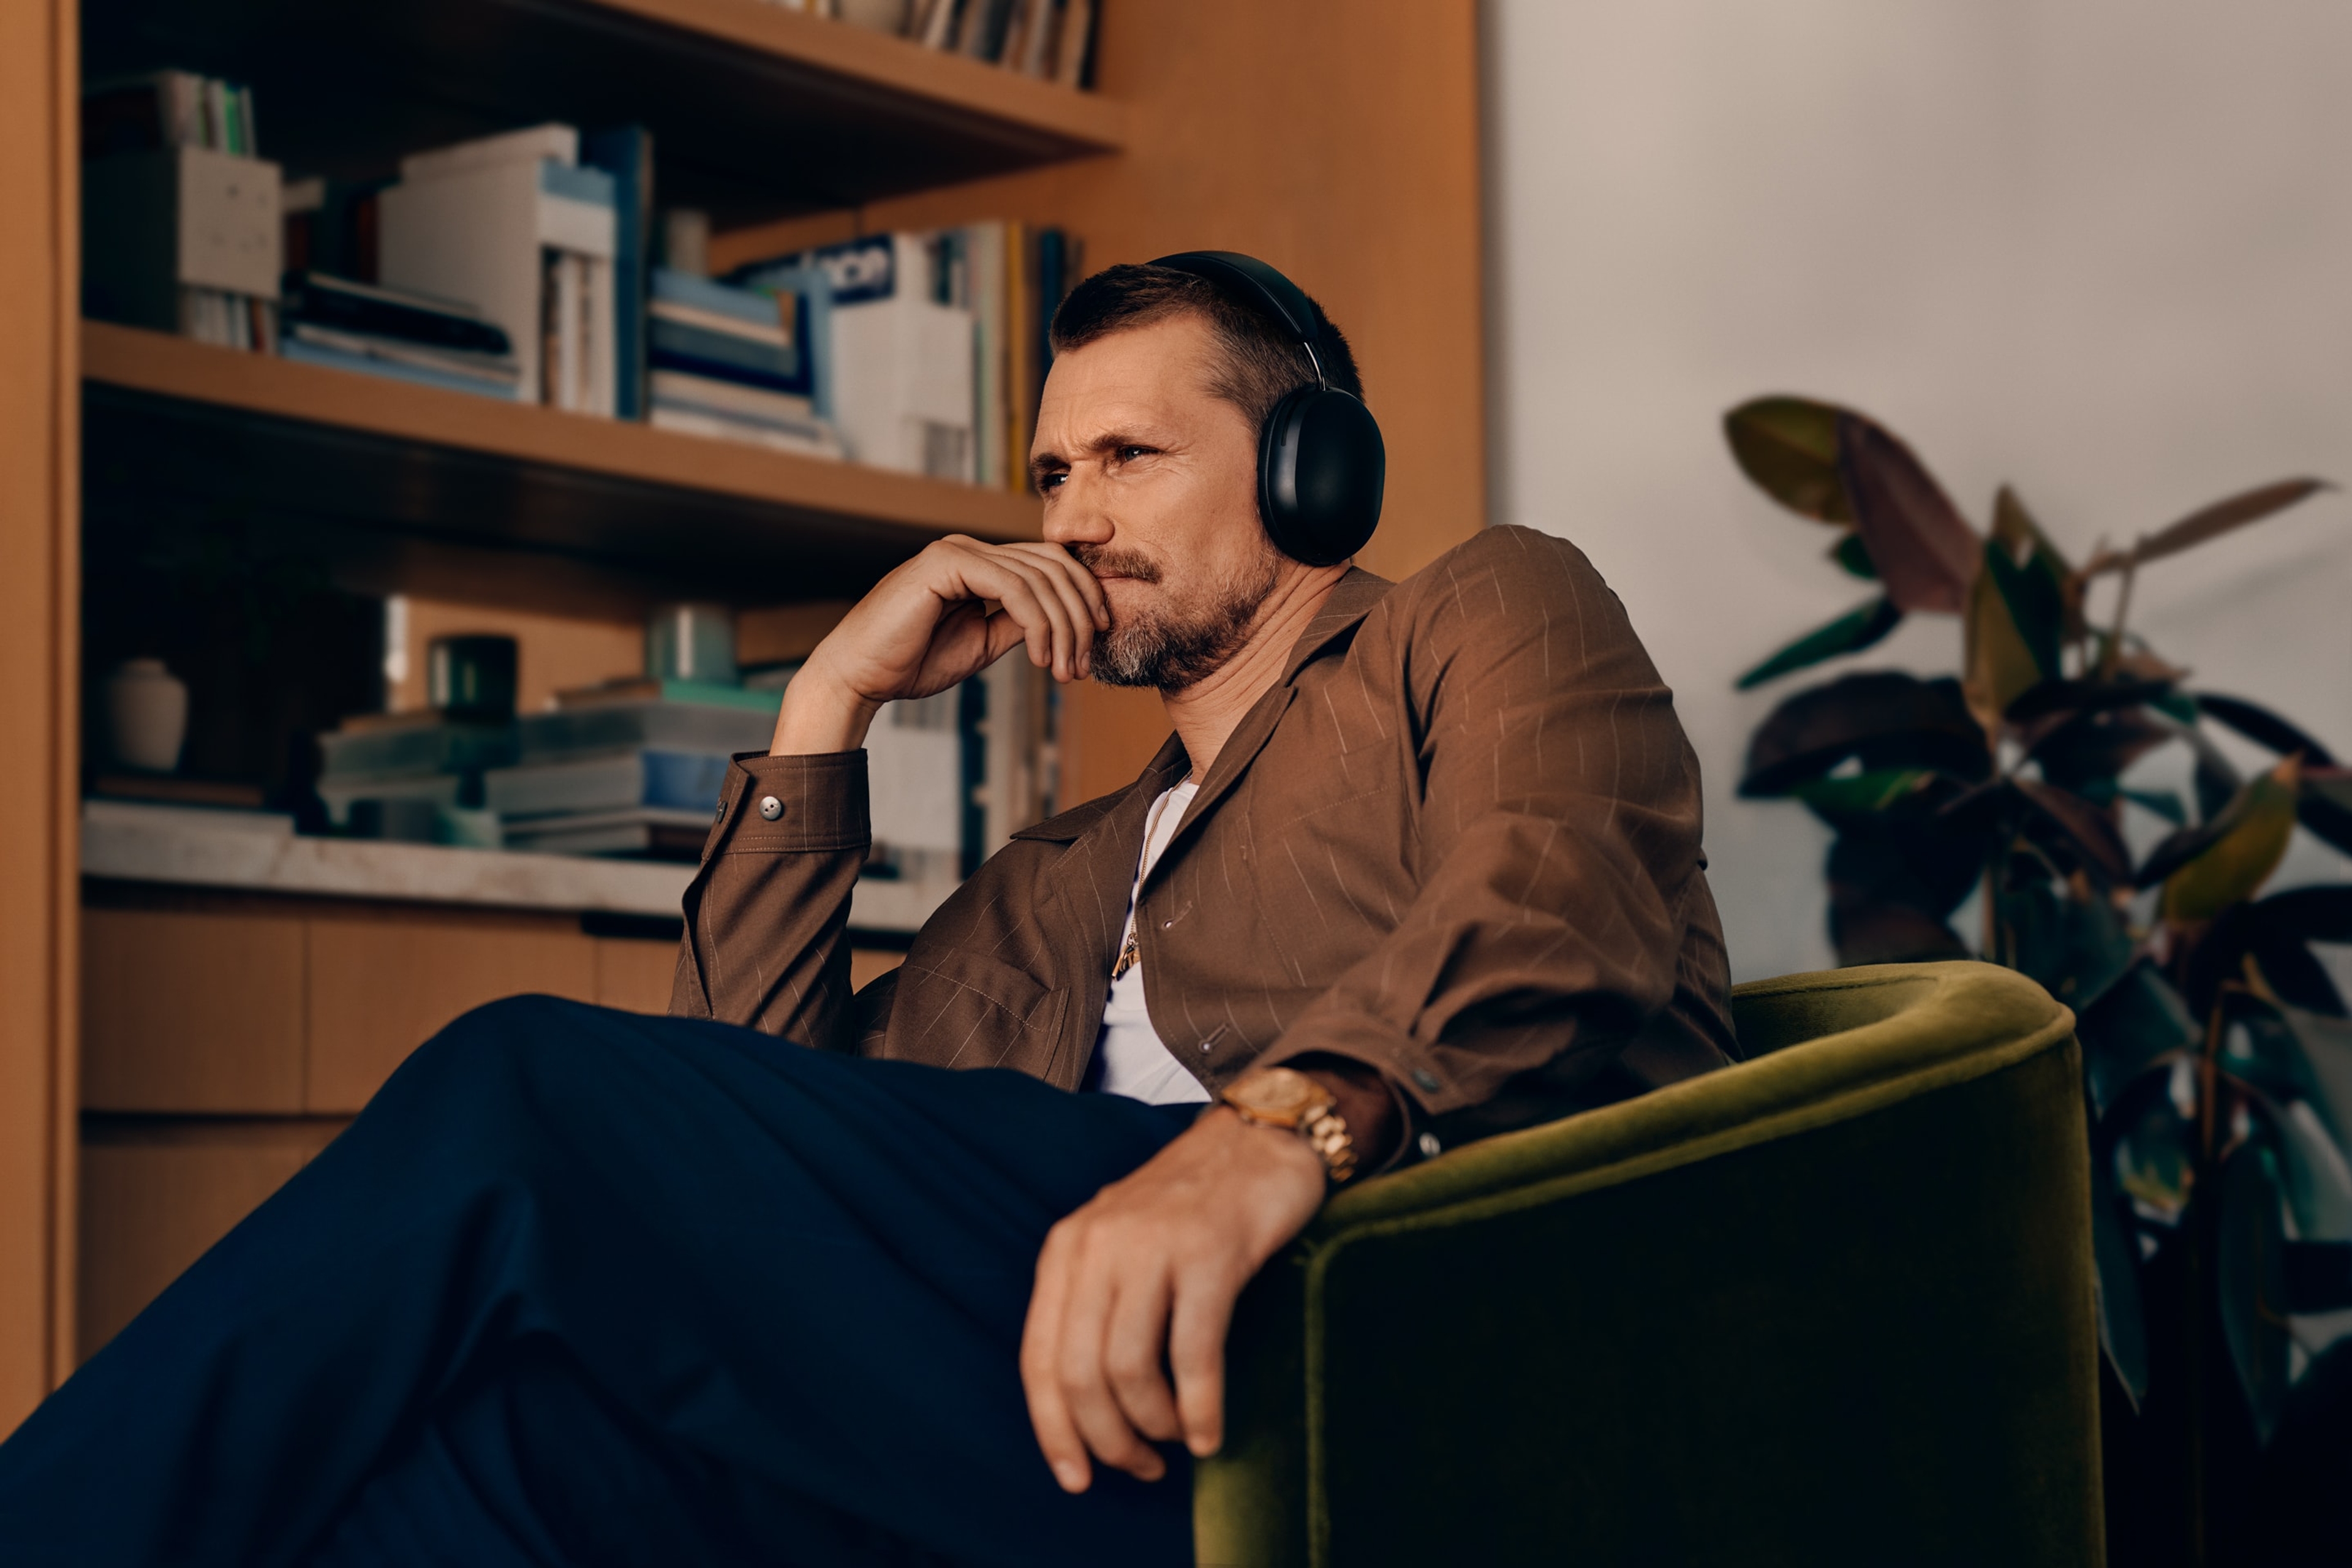 Mann som har på et par svarte Sonos Ace-hodetelefoner mens han sitter i en stol